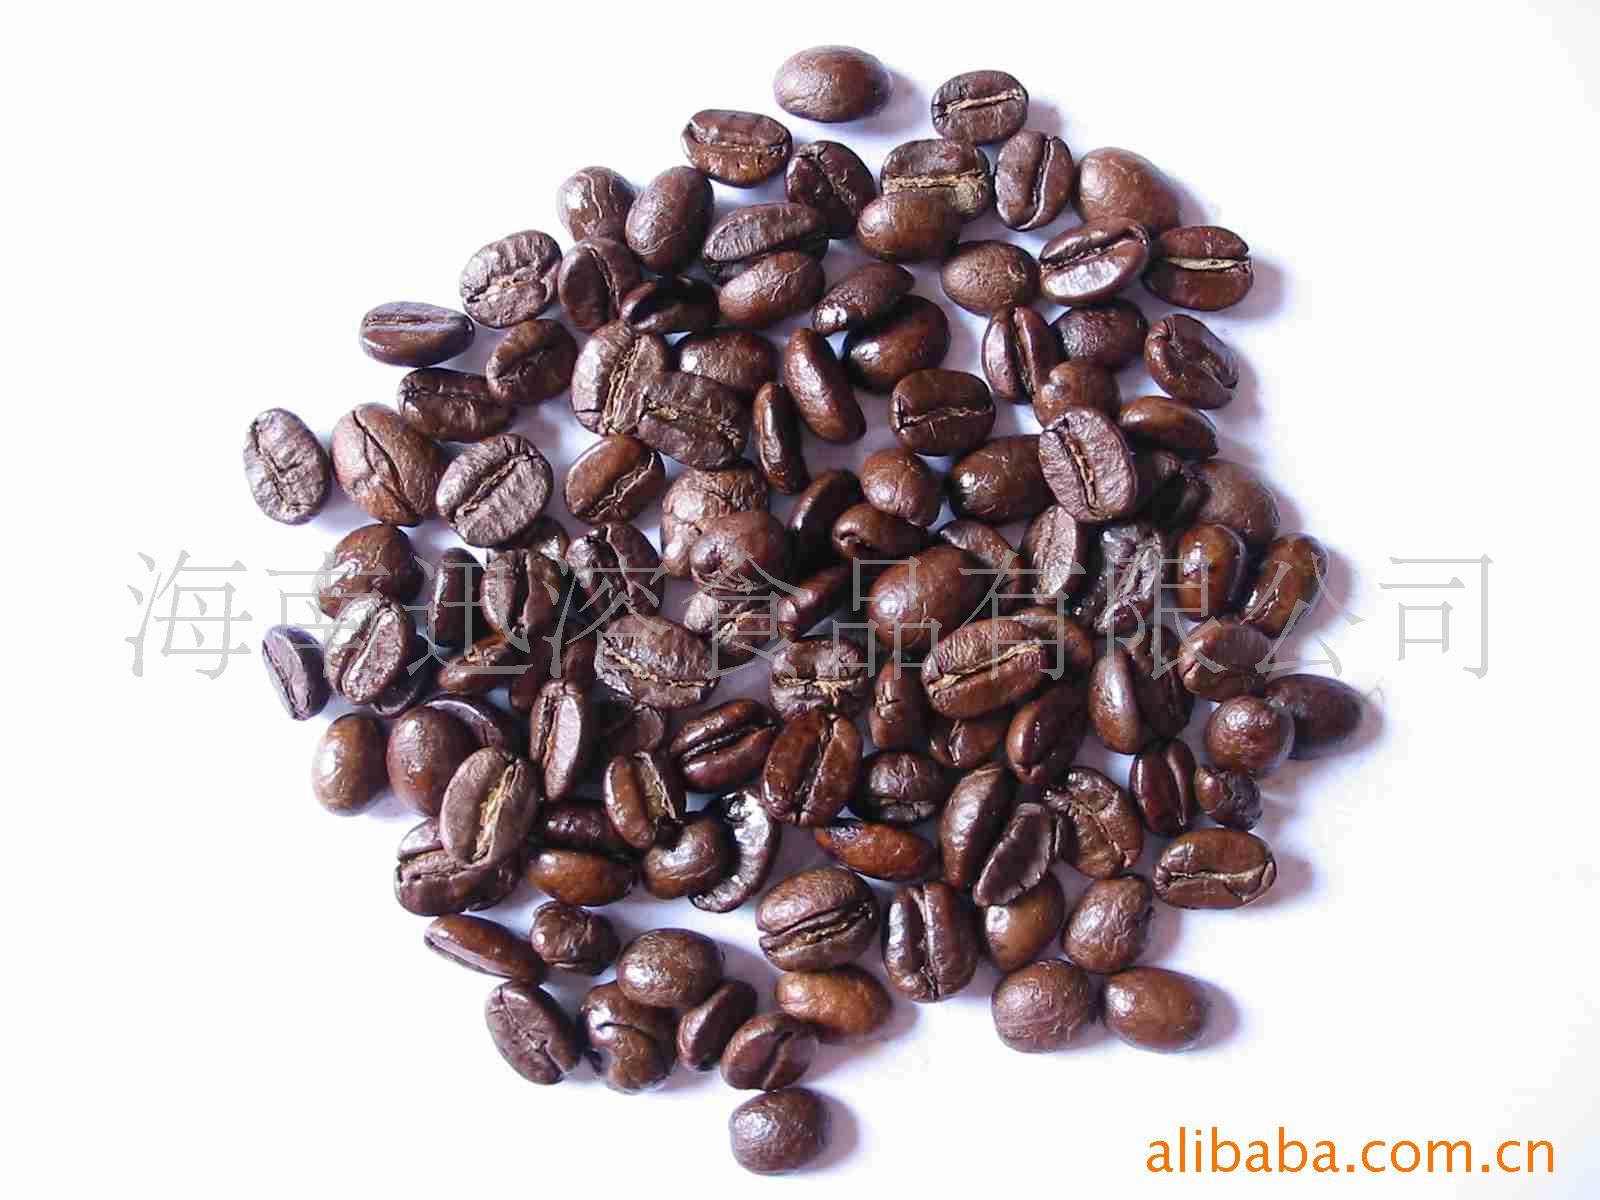 迅溶系列木炭烘焙--综合热咖啡豆信息